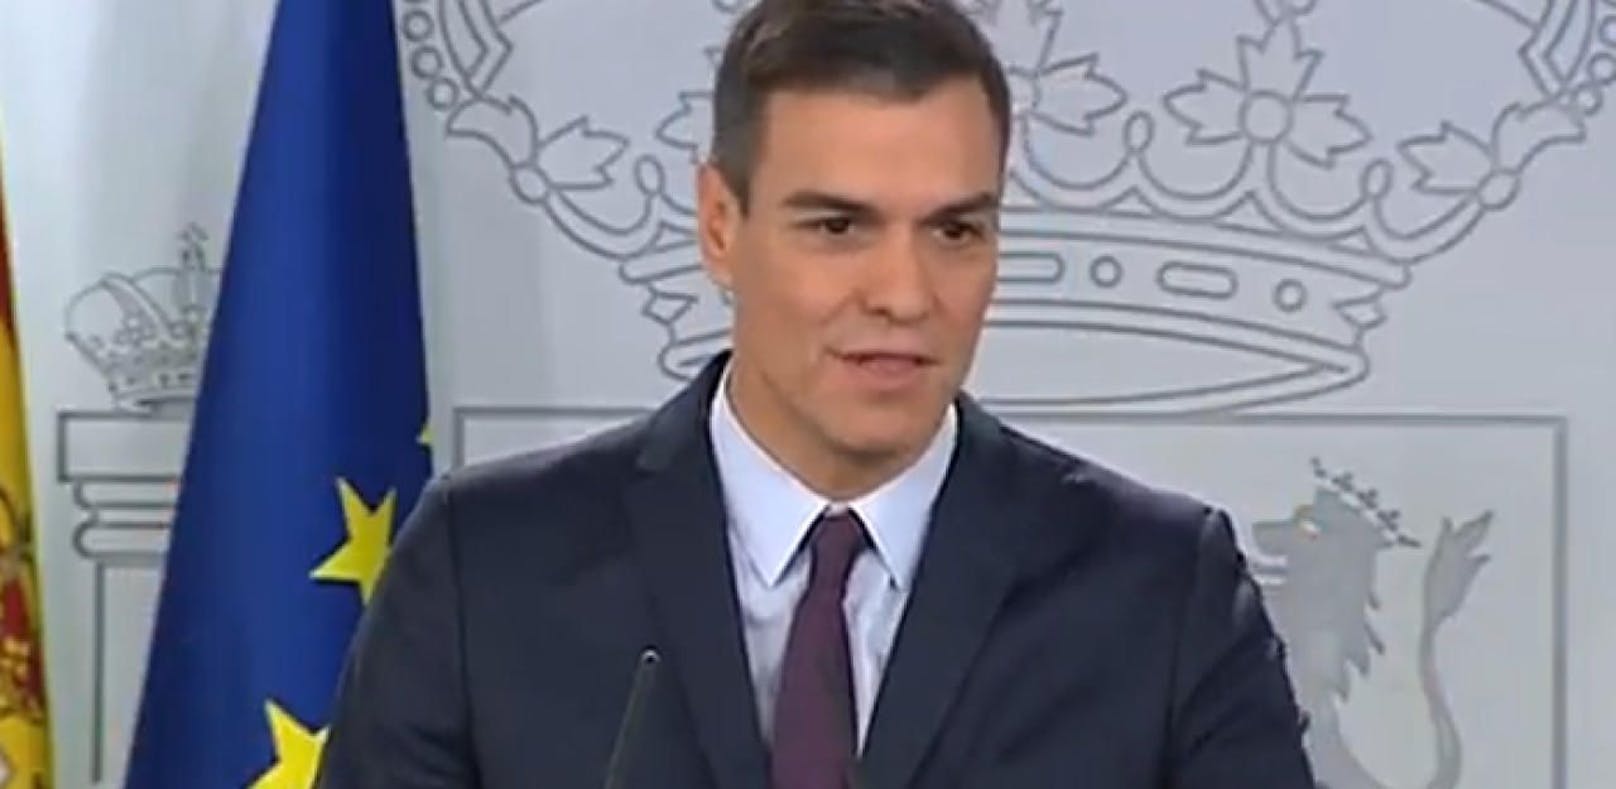 Pedro Sánchez bei der Pressekonferenz am Freitag